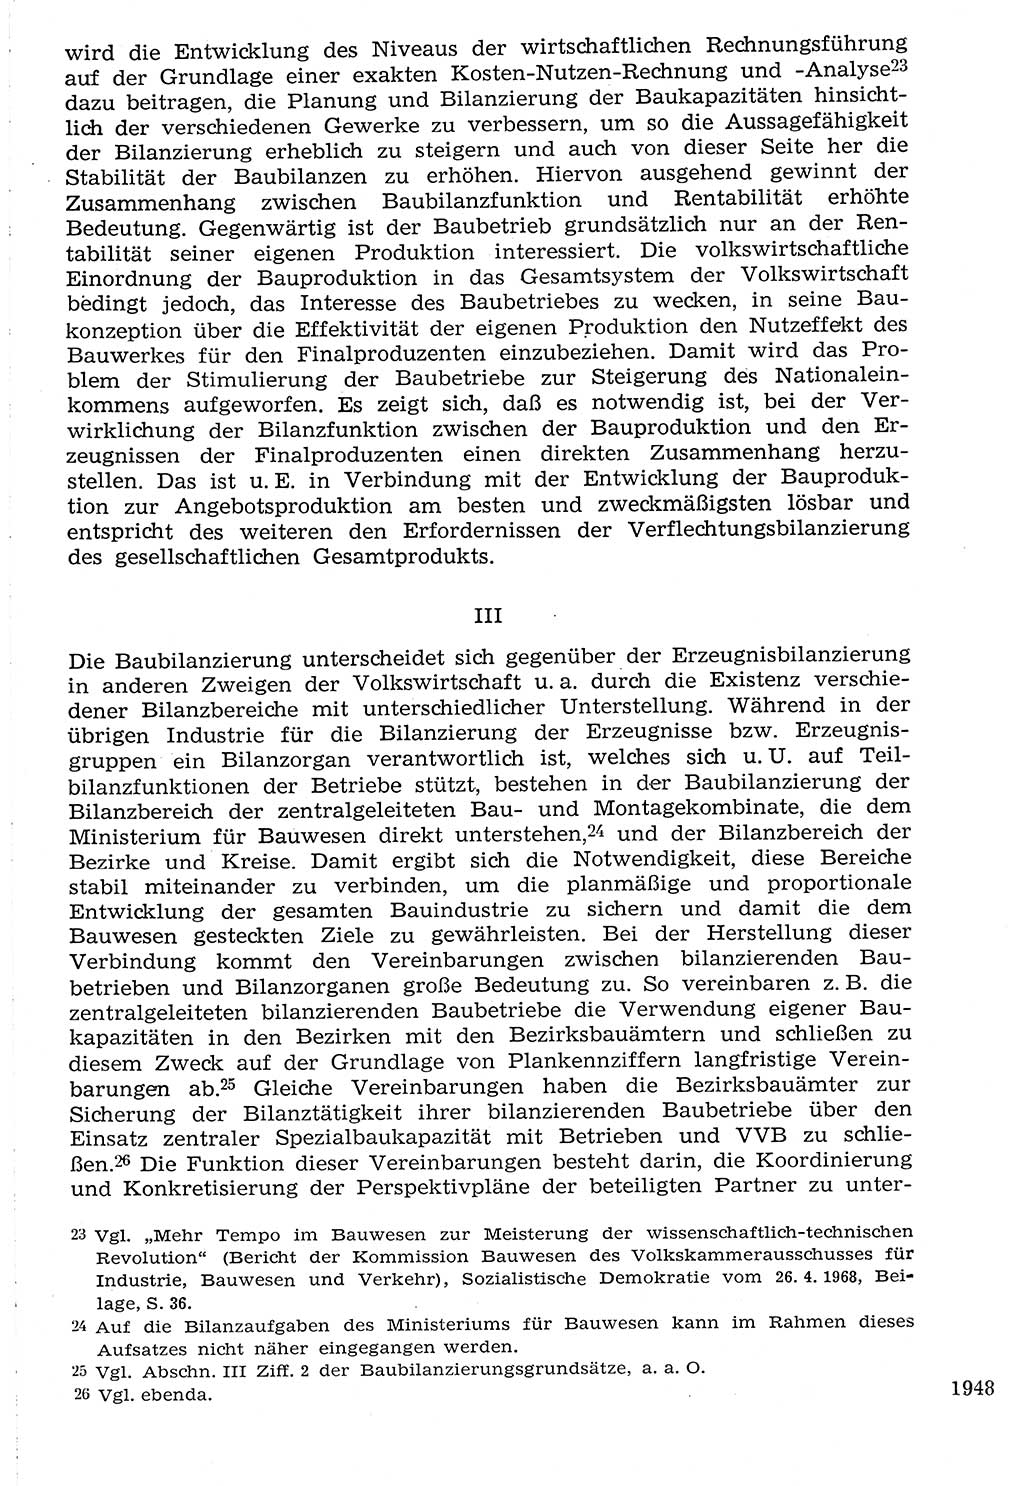 Staat und Recht (StuR), 17. Jahrgang [Deutsche Demokratische Republik (DDR)] 1968, Seite 1948 (StuR DDR 1968, S. 1948)